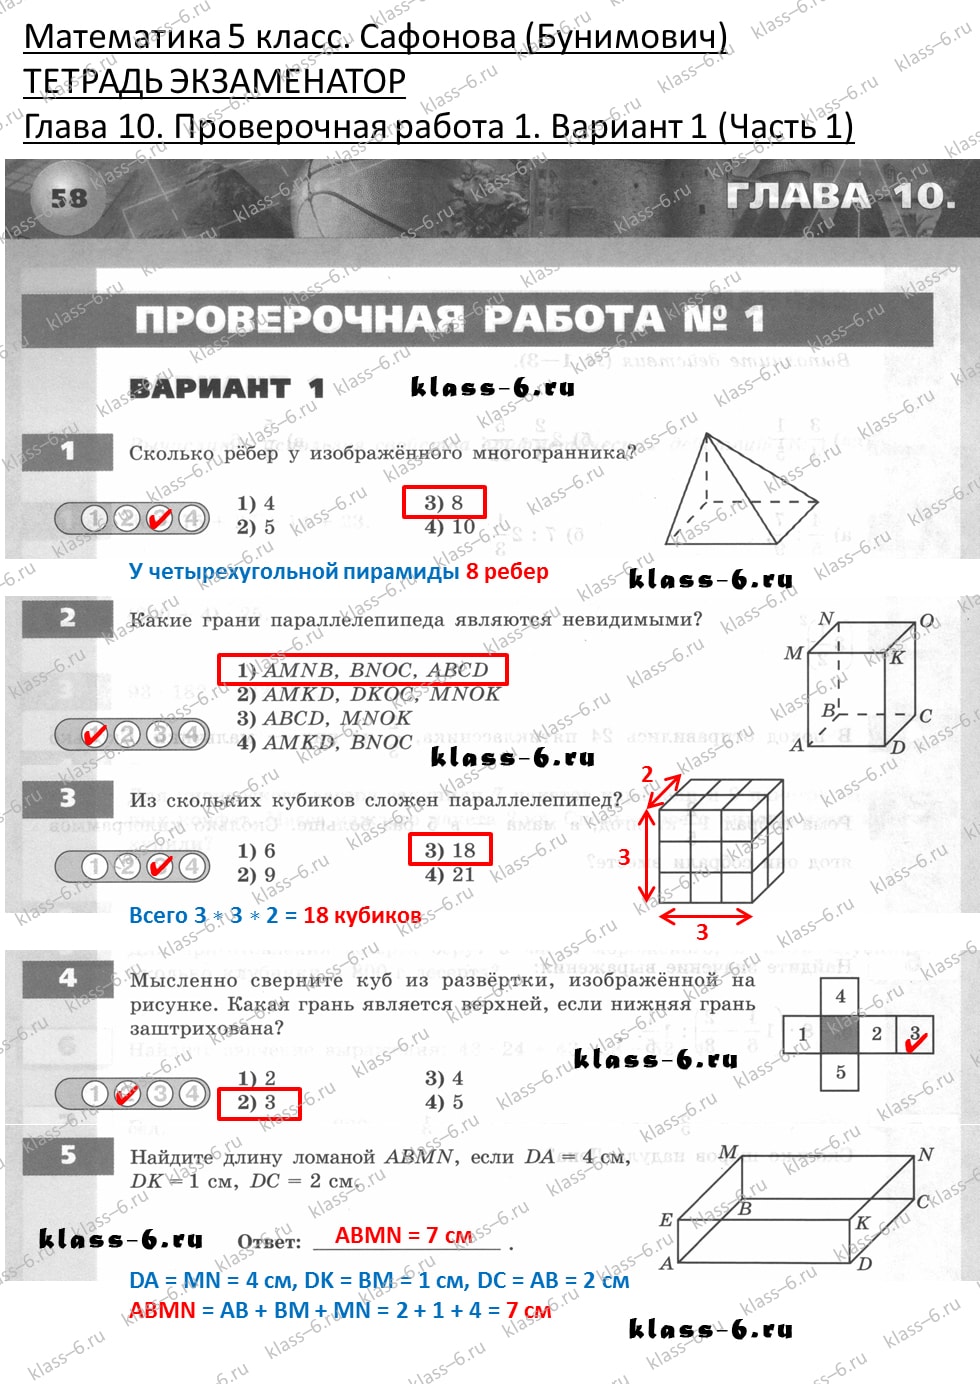 решебник и гдз по математике тетрадь экзаменатор Сафонова, Бунимович 5 класс глава 10 контрольная работа 1 вариант 1 (1)